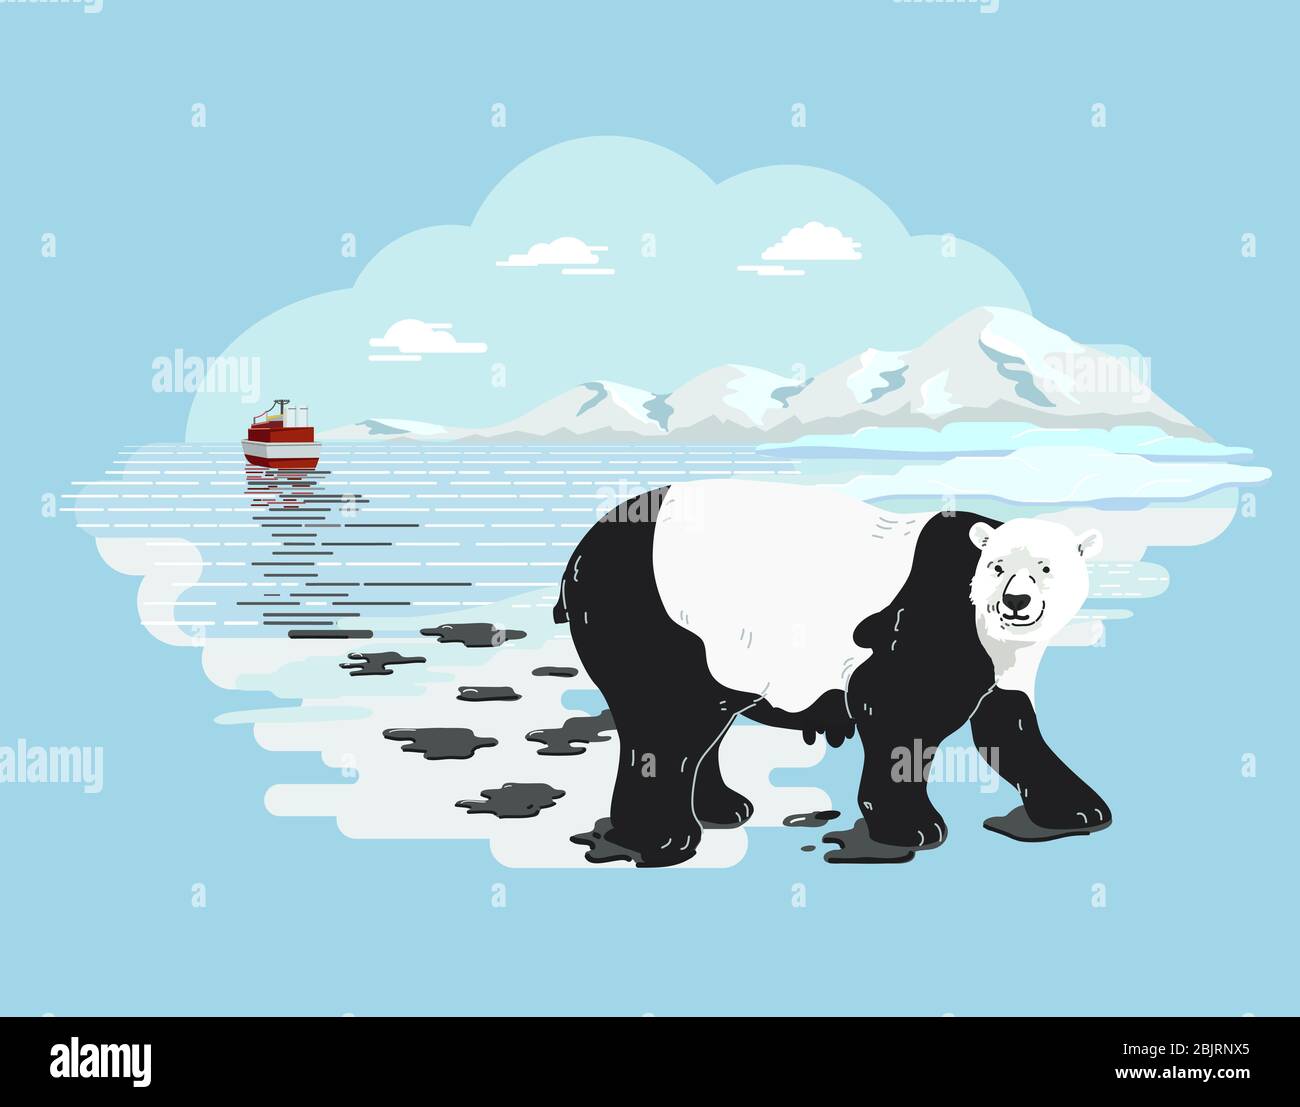 Orso polare coperto da fuoriuscite di petrolio dalla nave da carico in modo da assomiglia ad un panda Foto Stock